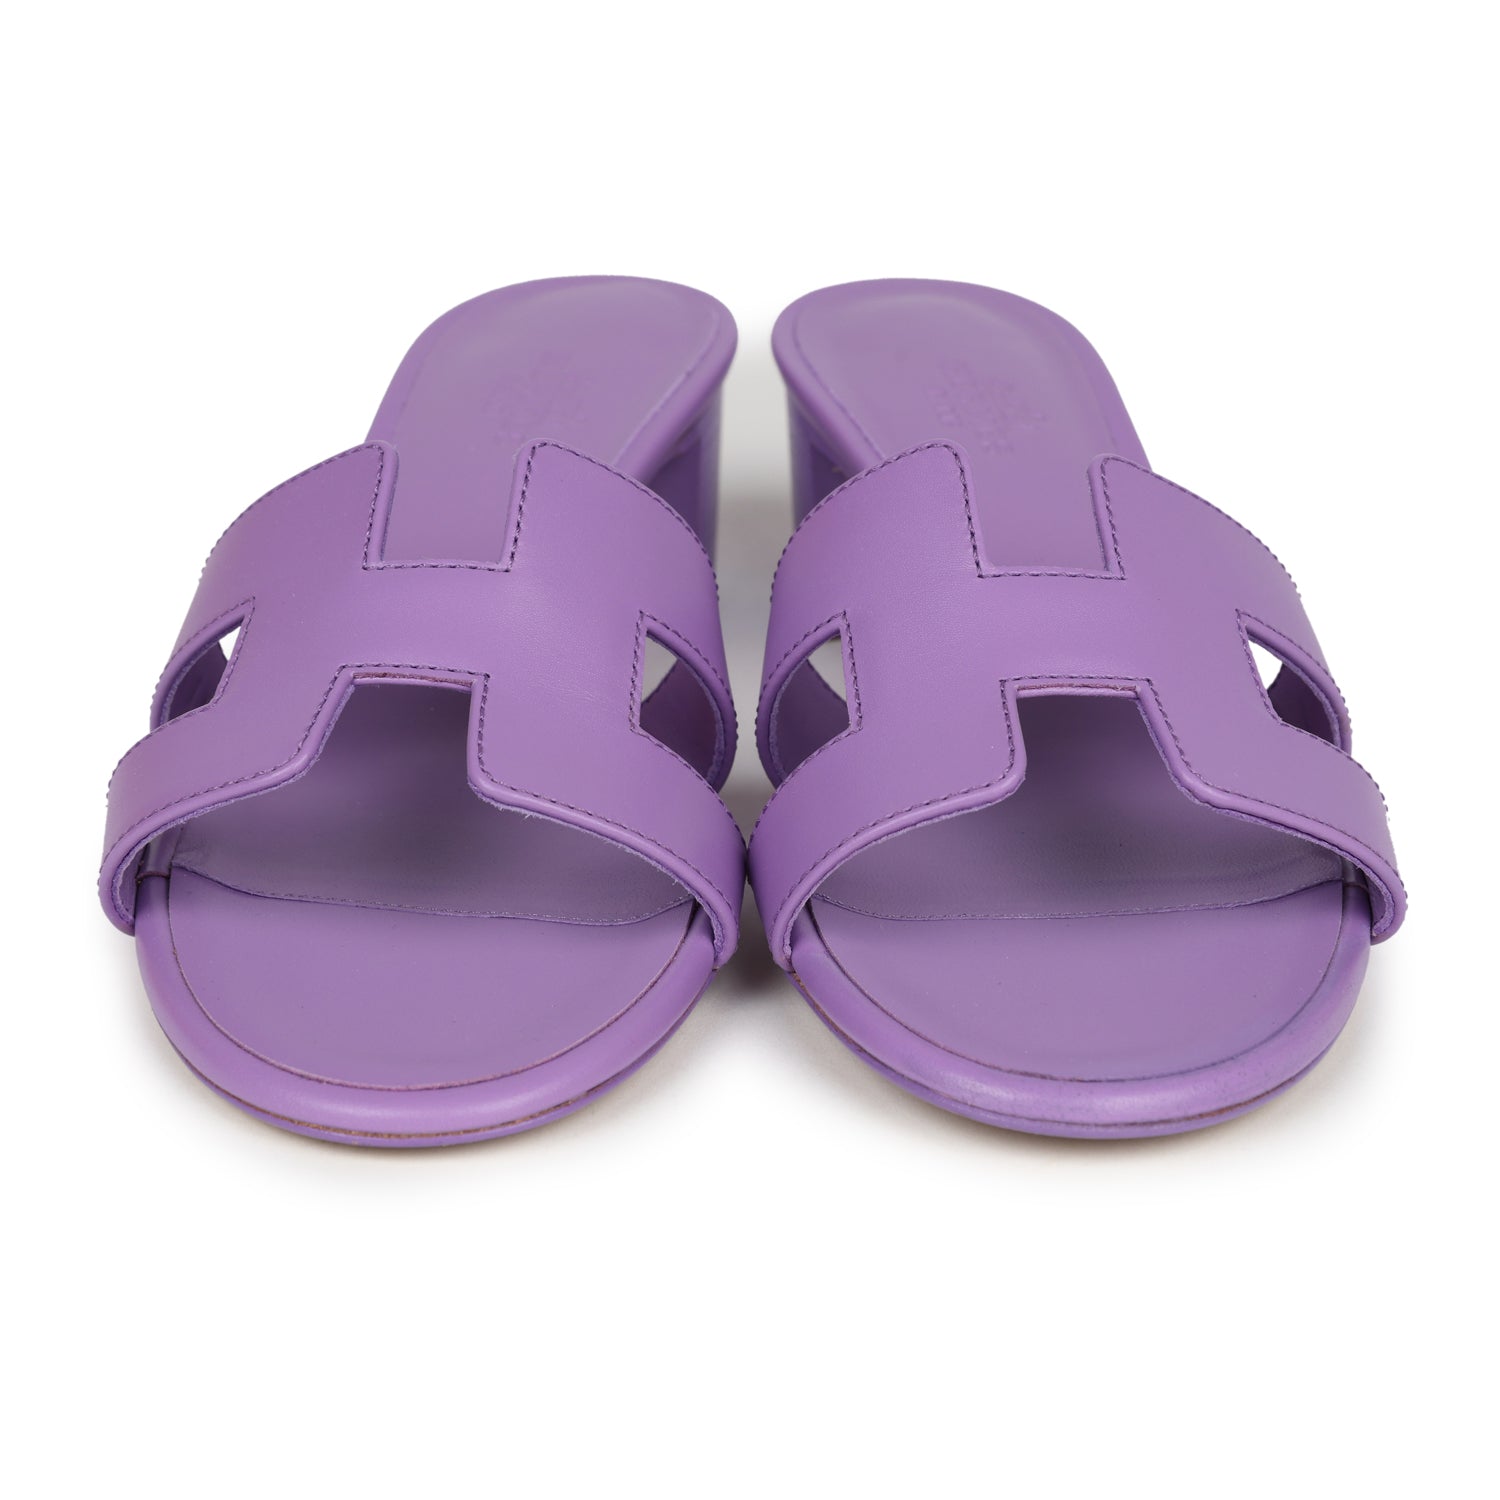 Hermes Oasis Sandals Violet Calfskin 36.5 EU